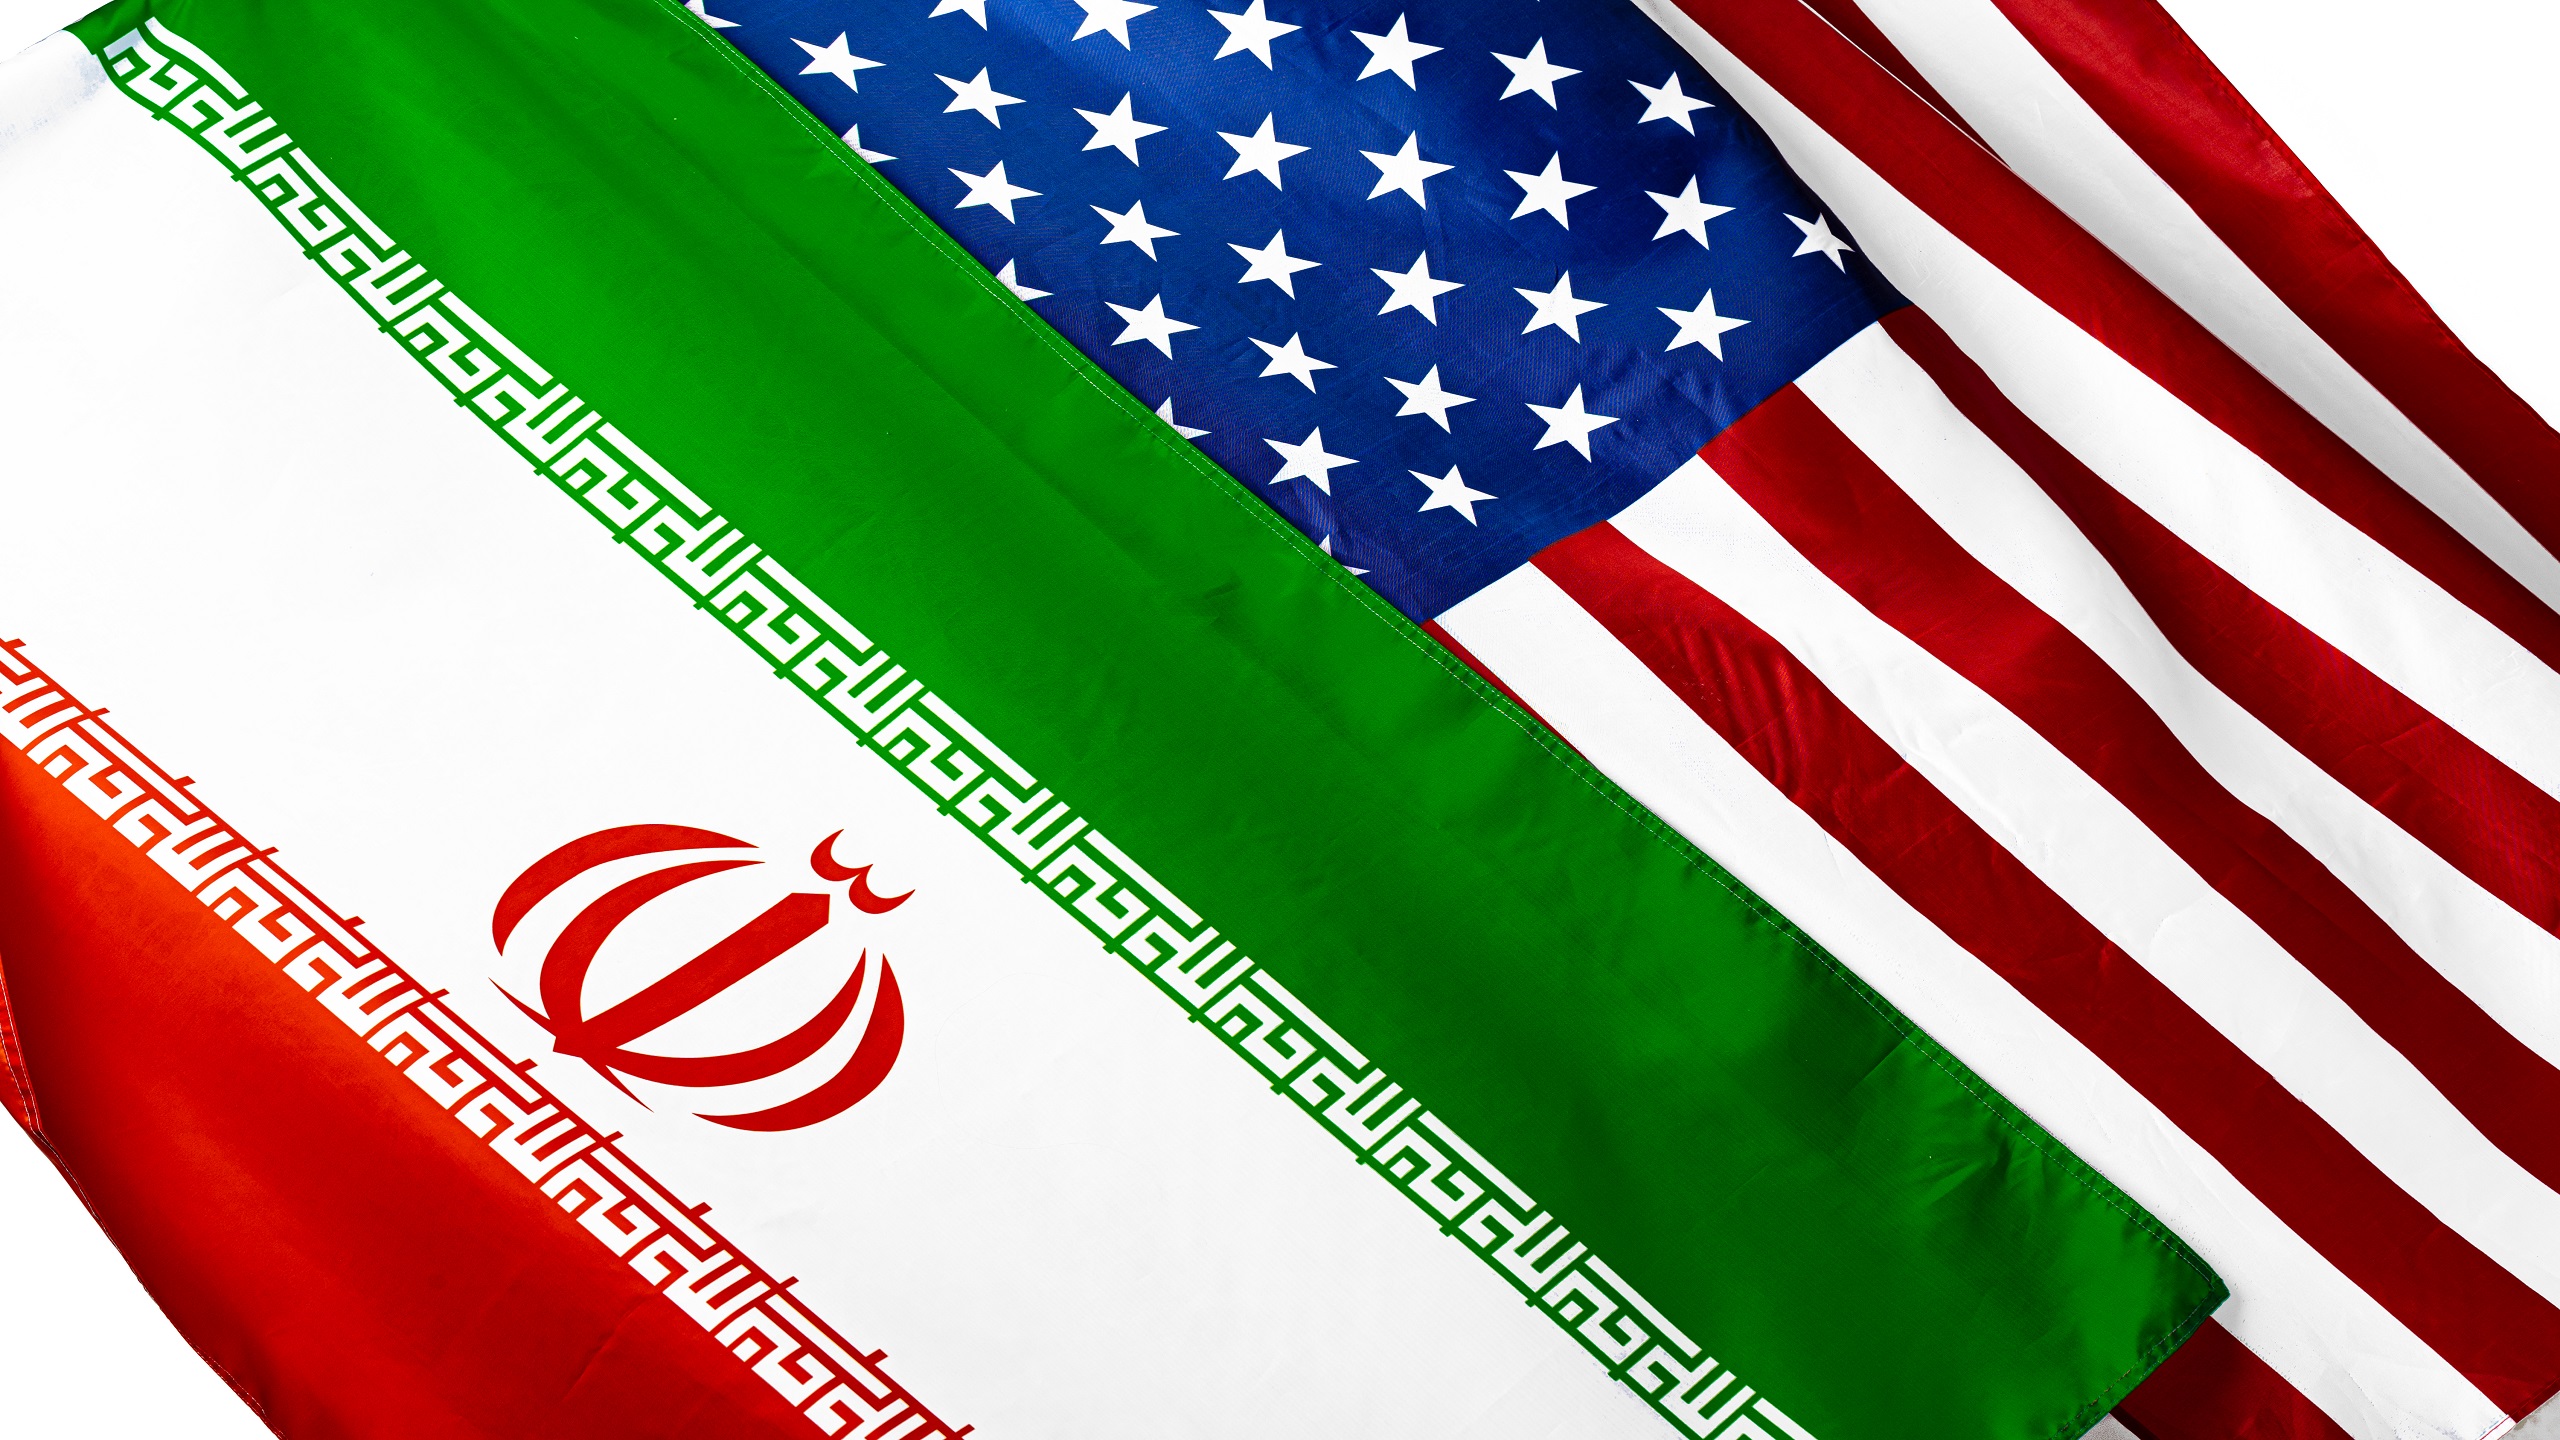 NYT: Attacks on Iran Nuclear Facilities ‘Counterproductive,’ US Warns Israel